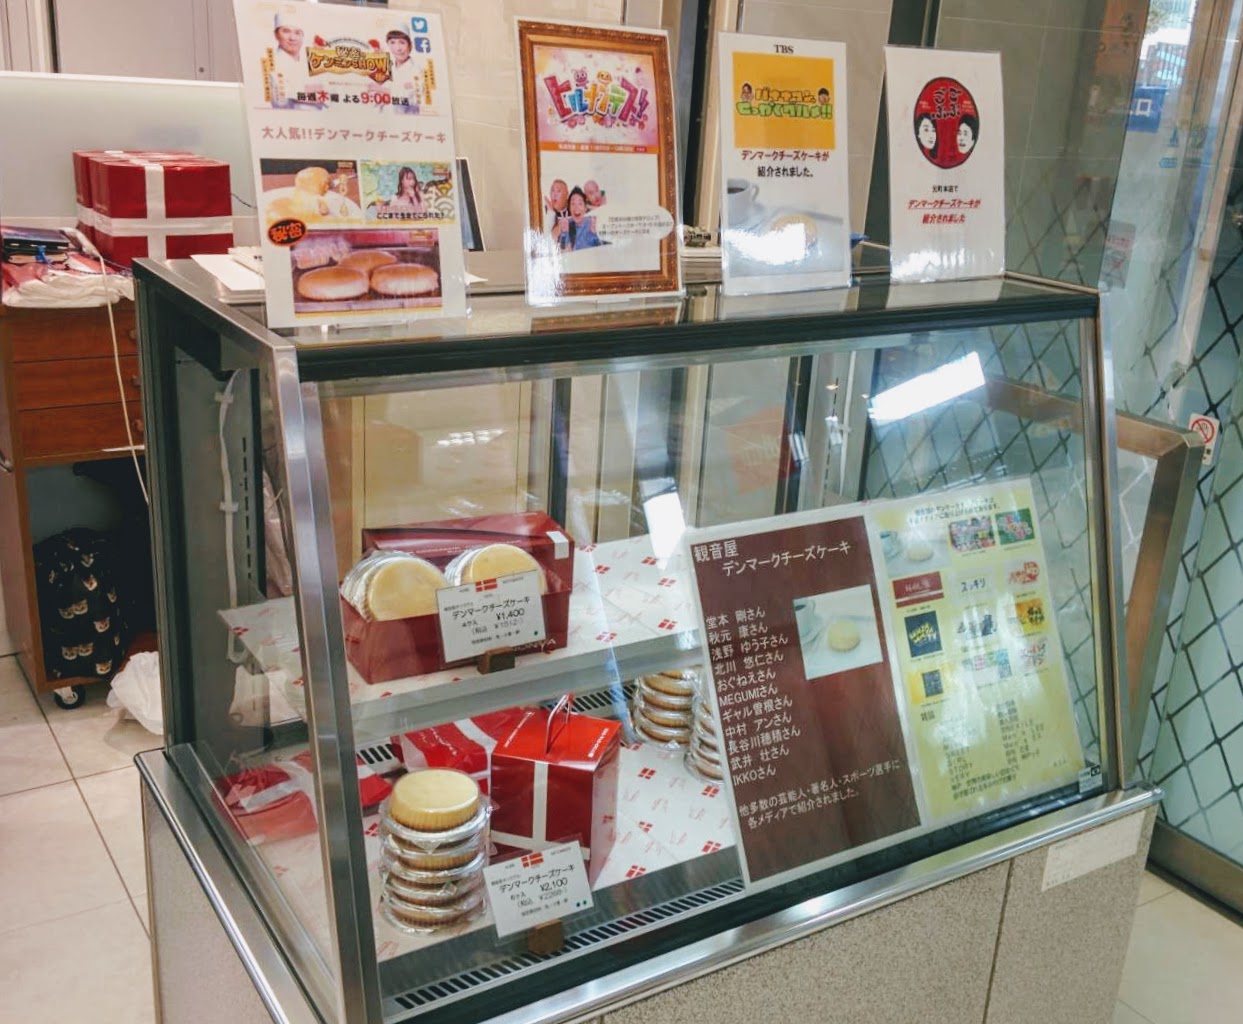 所沢市 秘密のケンミンshow極 でも紹介された 神戸元町 観音屋 のチーズケーキが西武所沢s C で期間限定販売中 号外net 所沢市